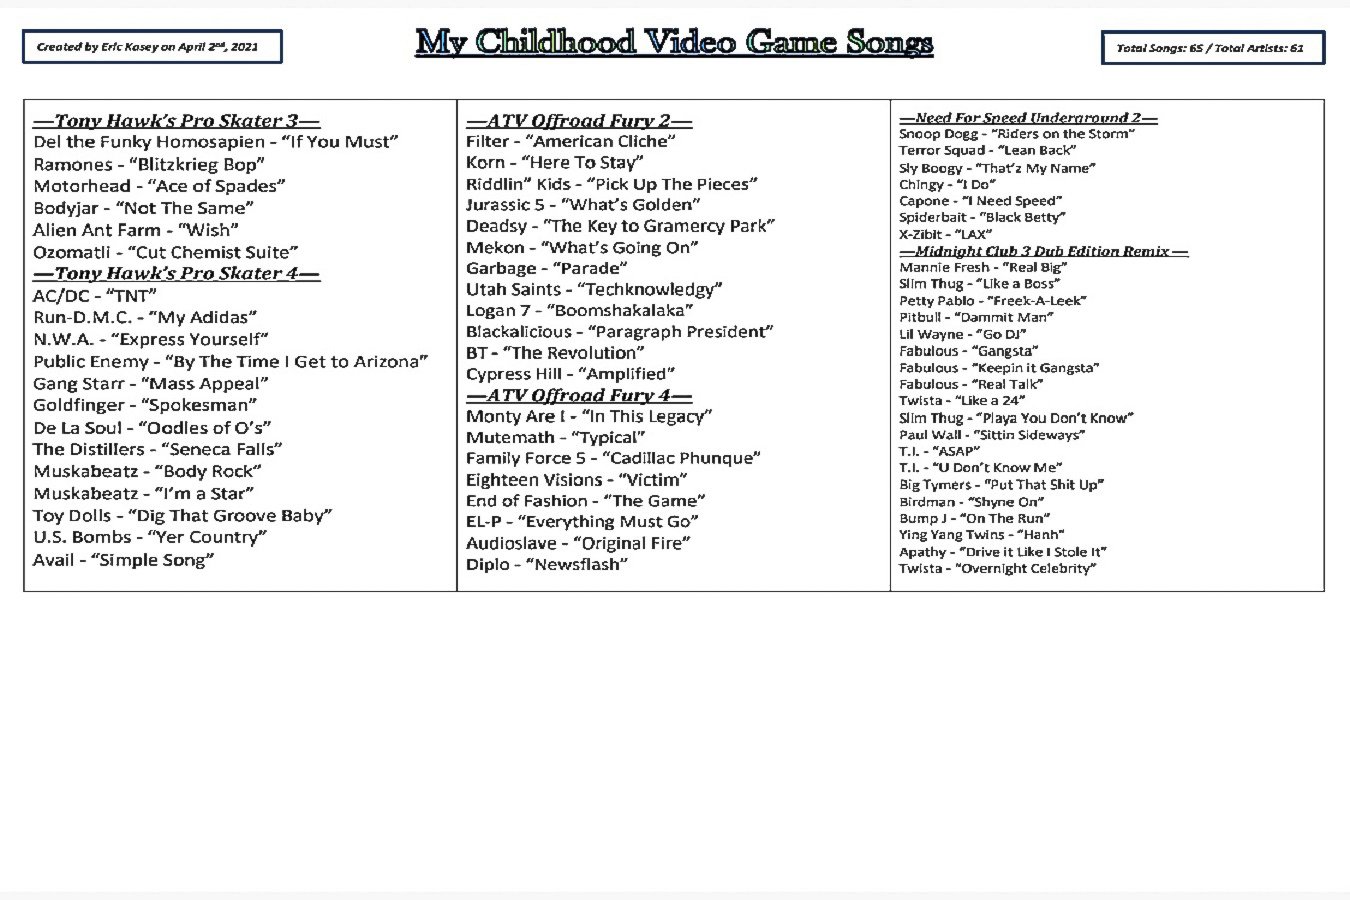 10 - My Childhood Video Game Songs.jpg